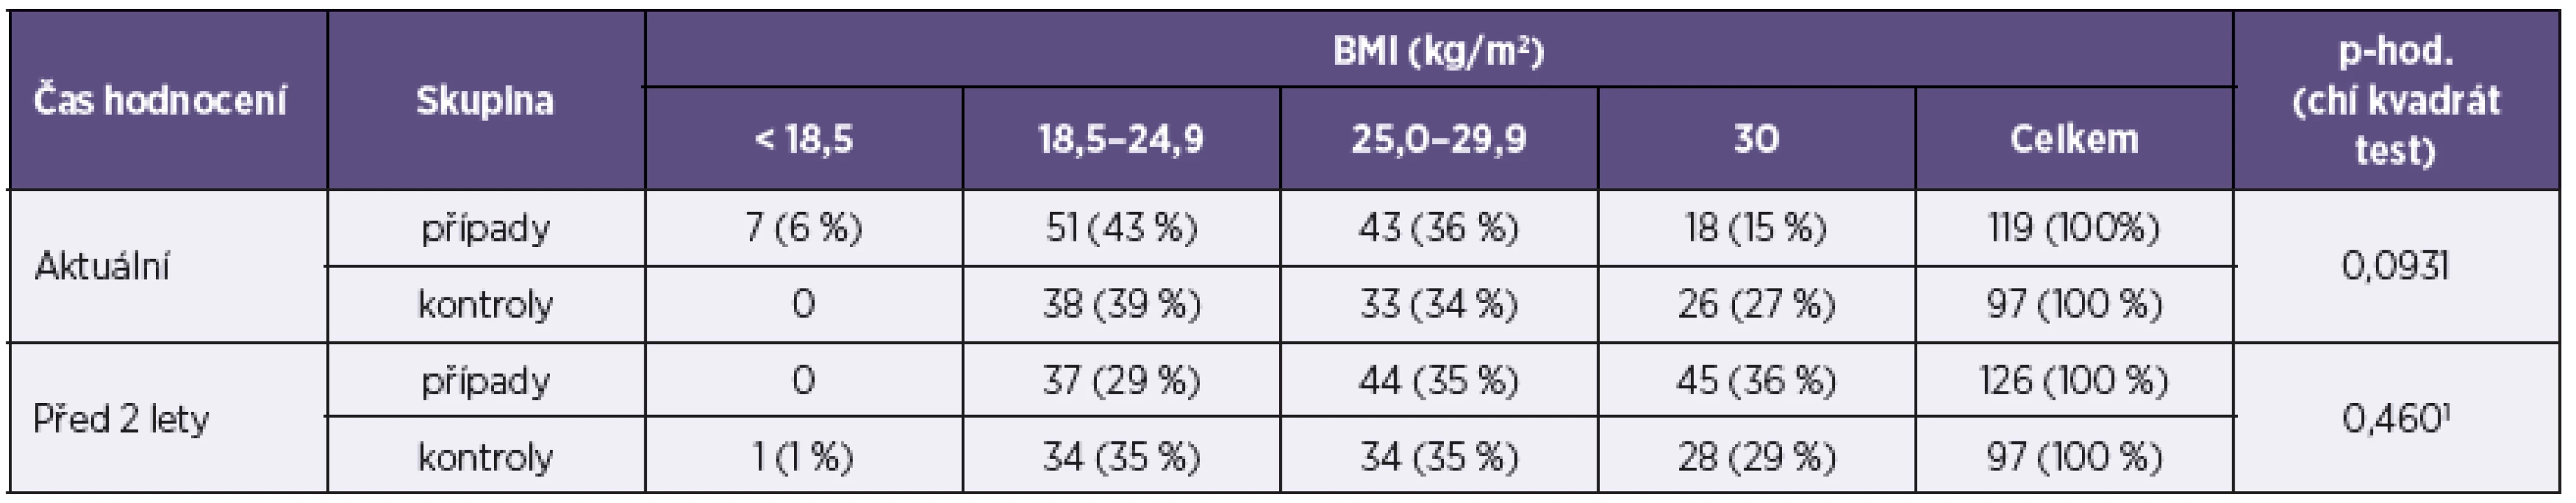 Body mass index u žen ve studii případů a kontrol
Table 2. Body mass index of females in the case-control study